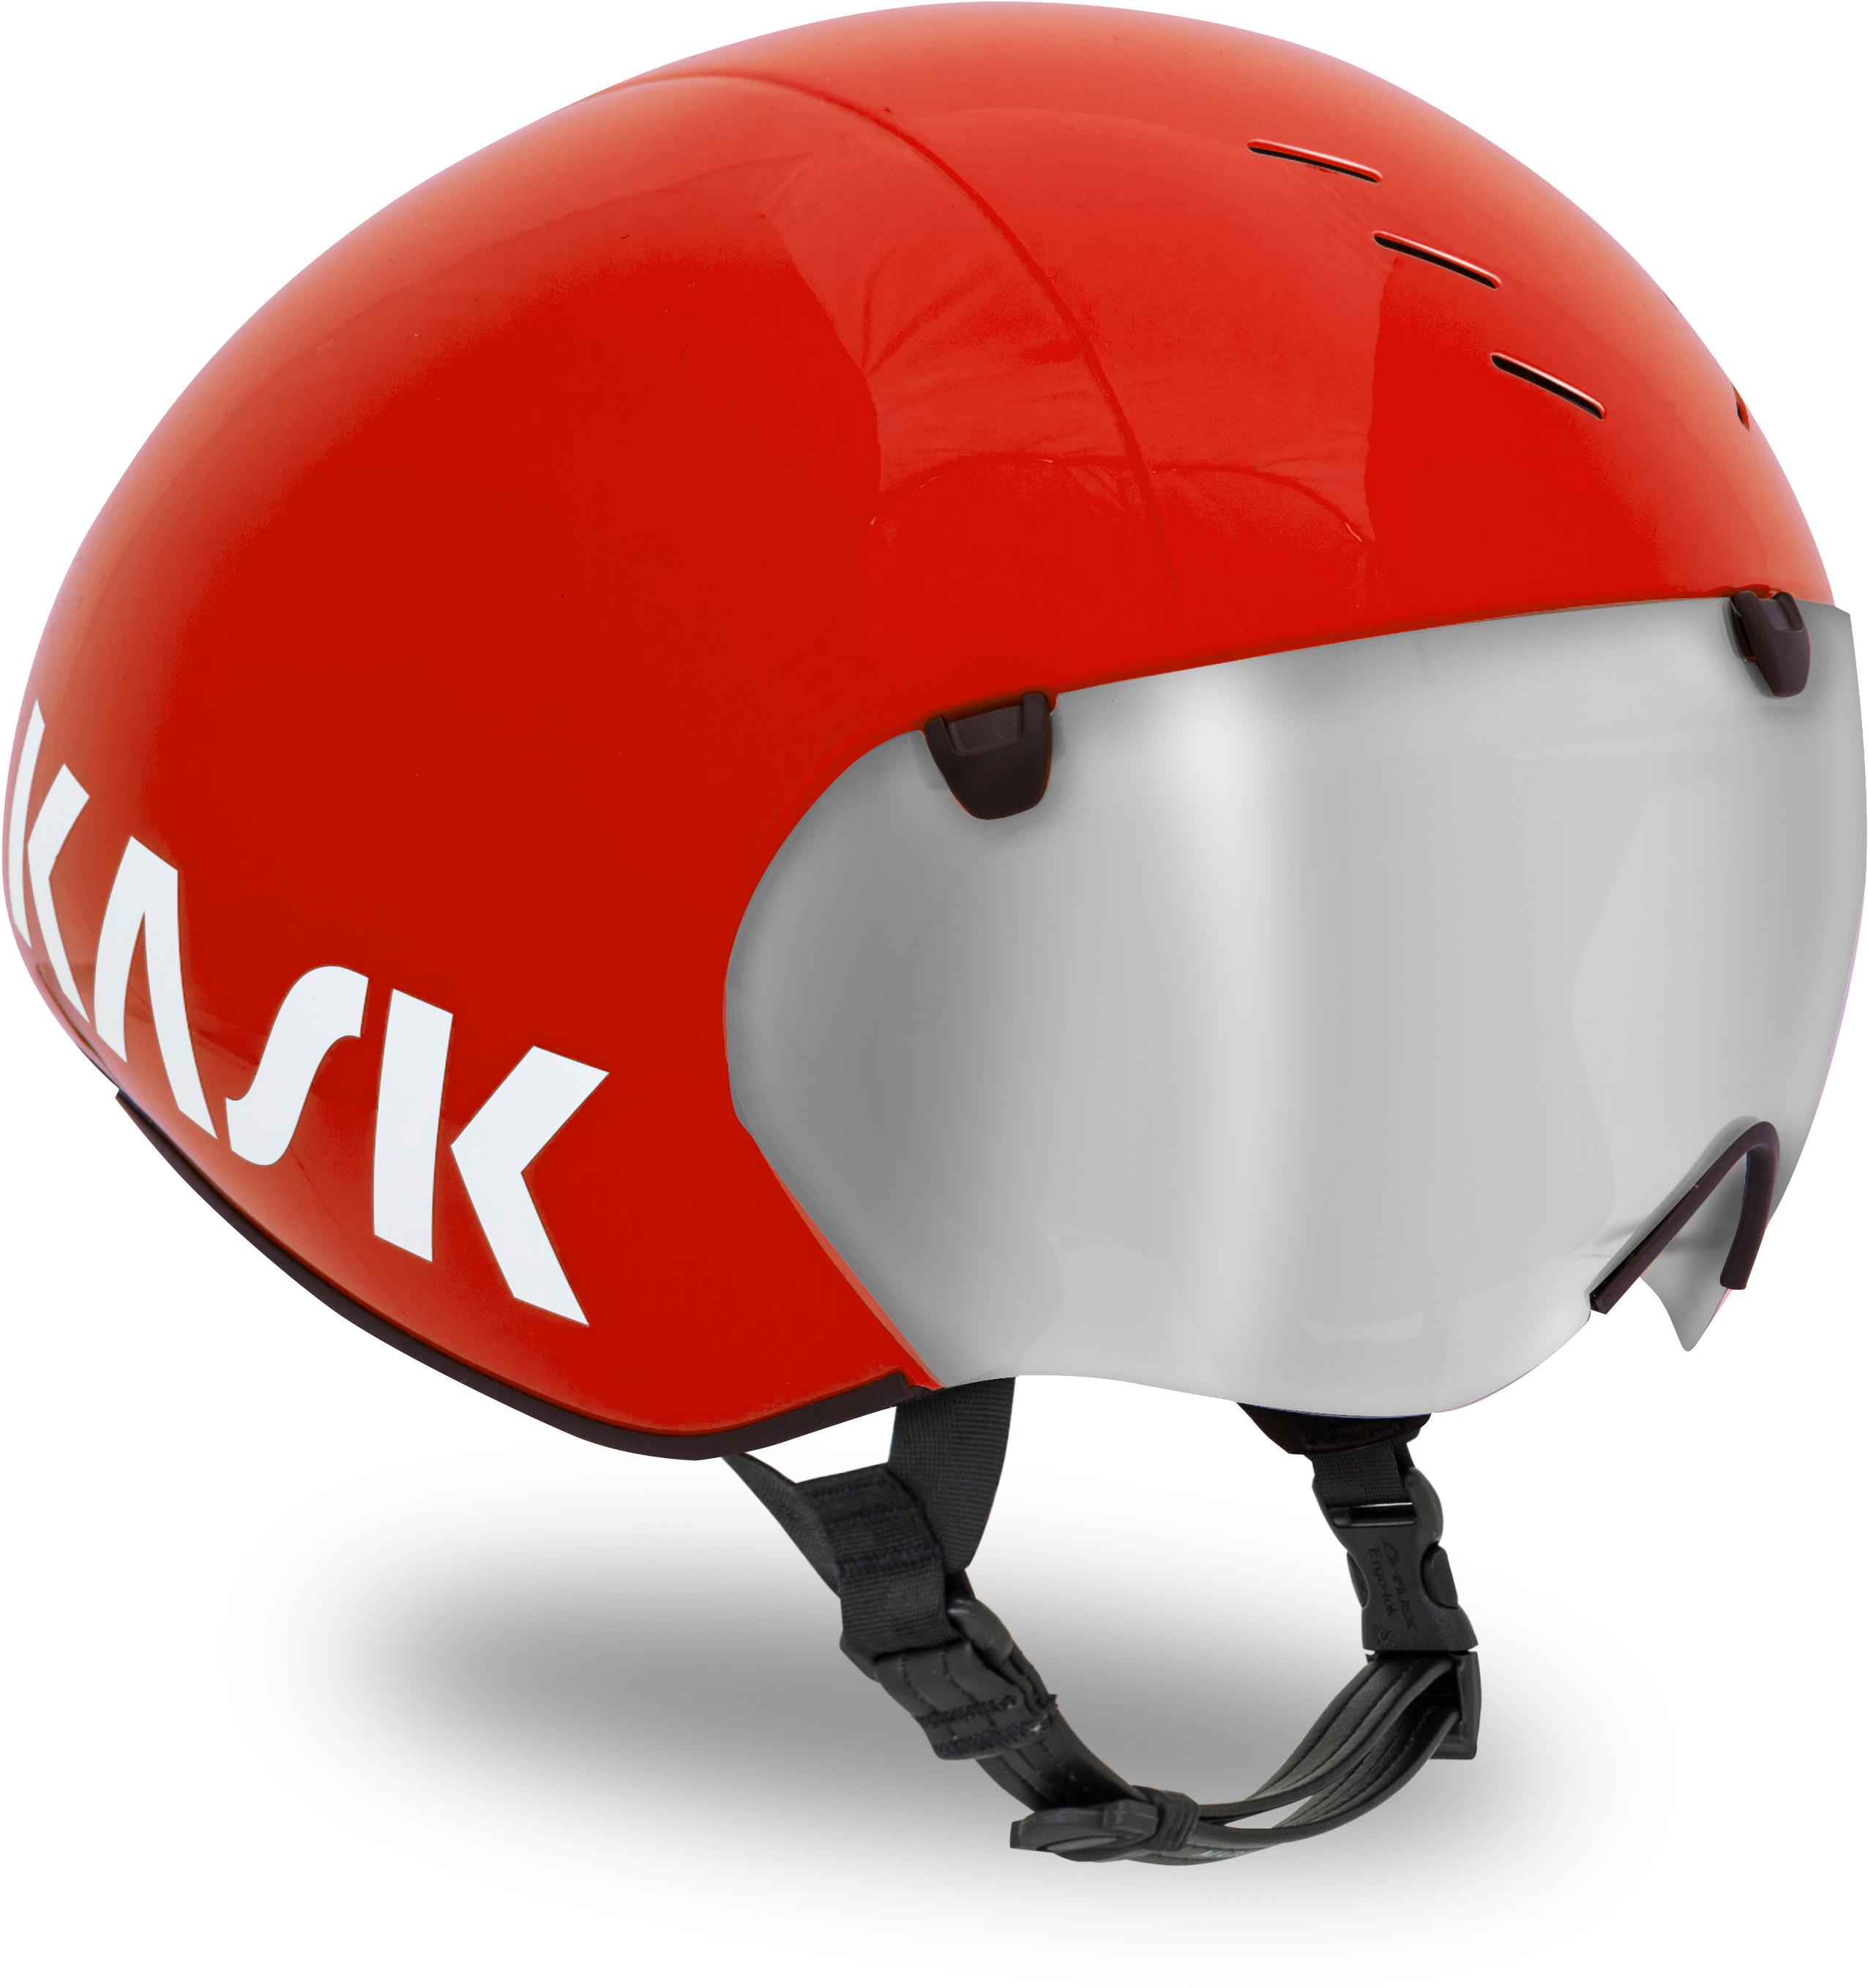 Kask Bambino Pro Tt Helmet Red, Large